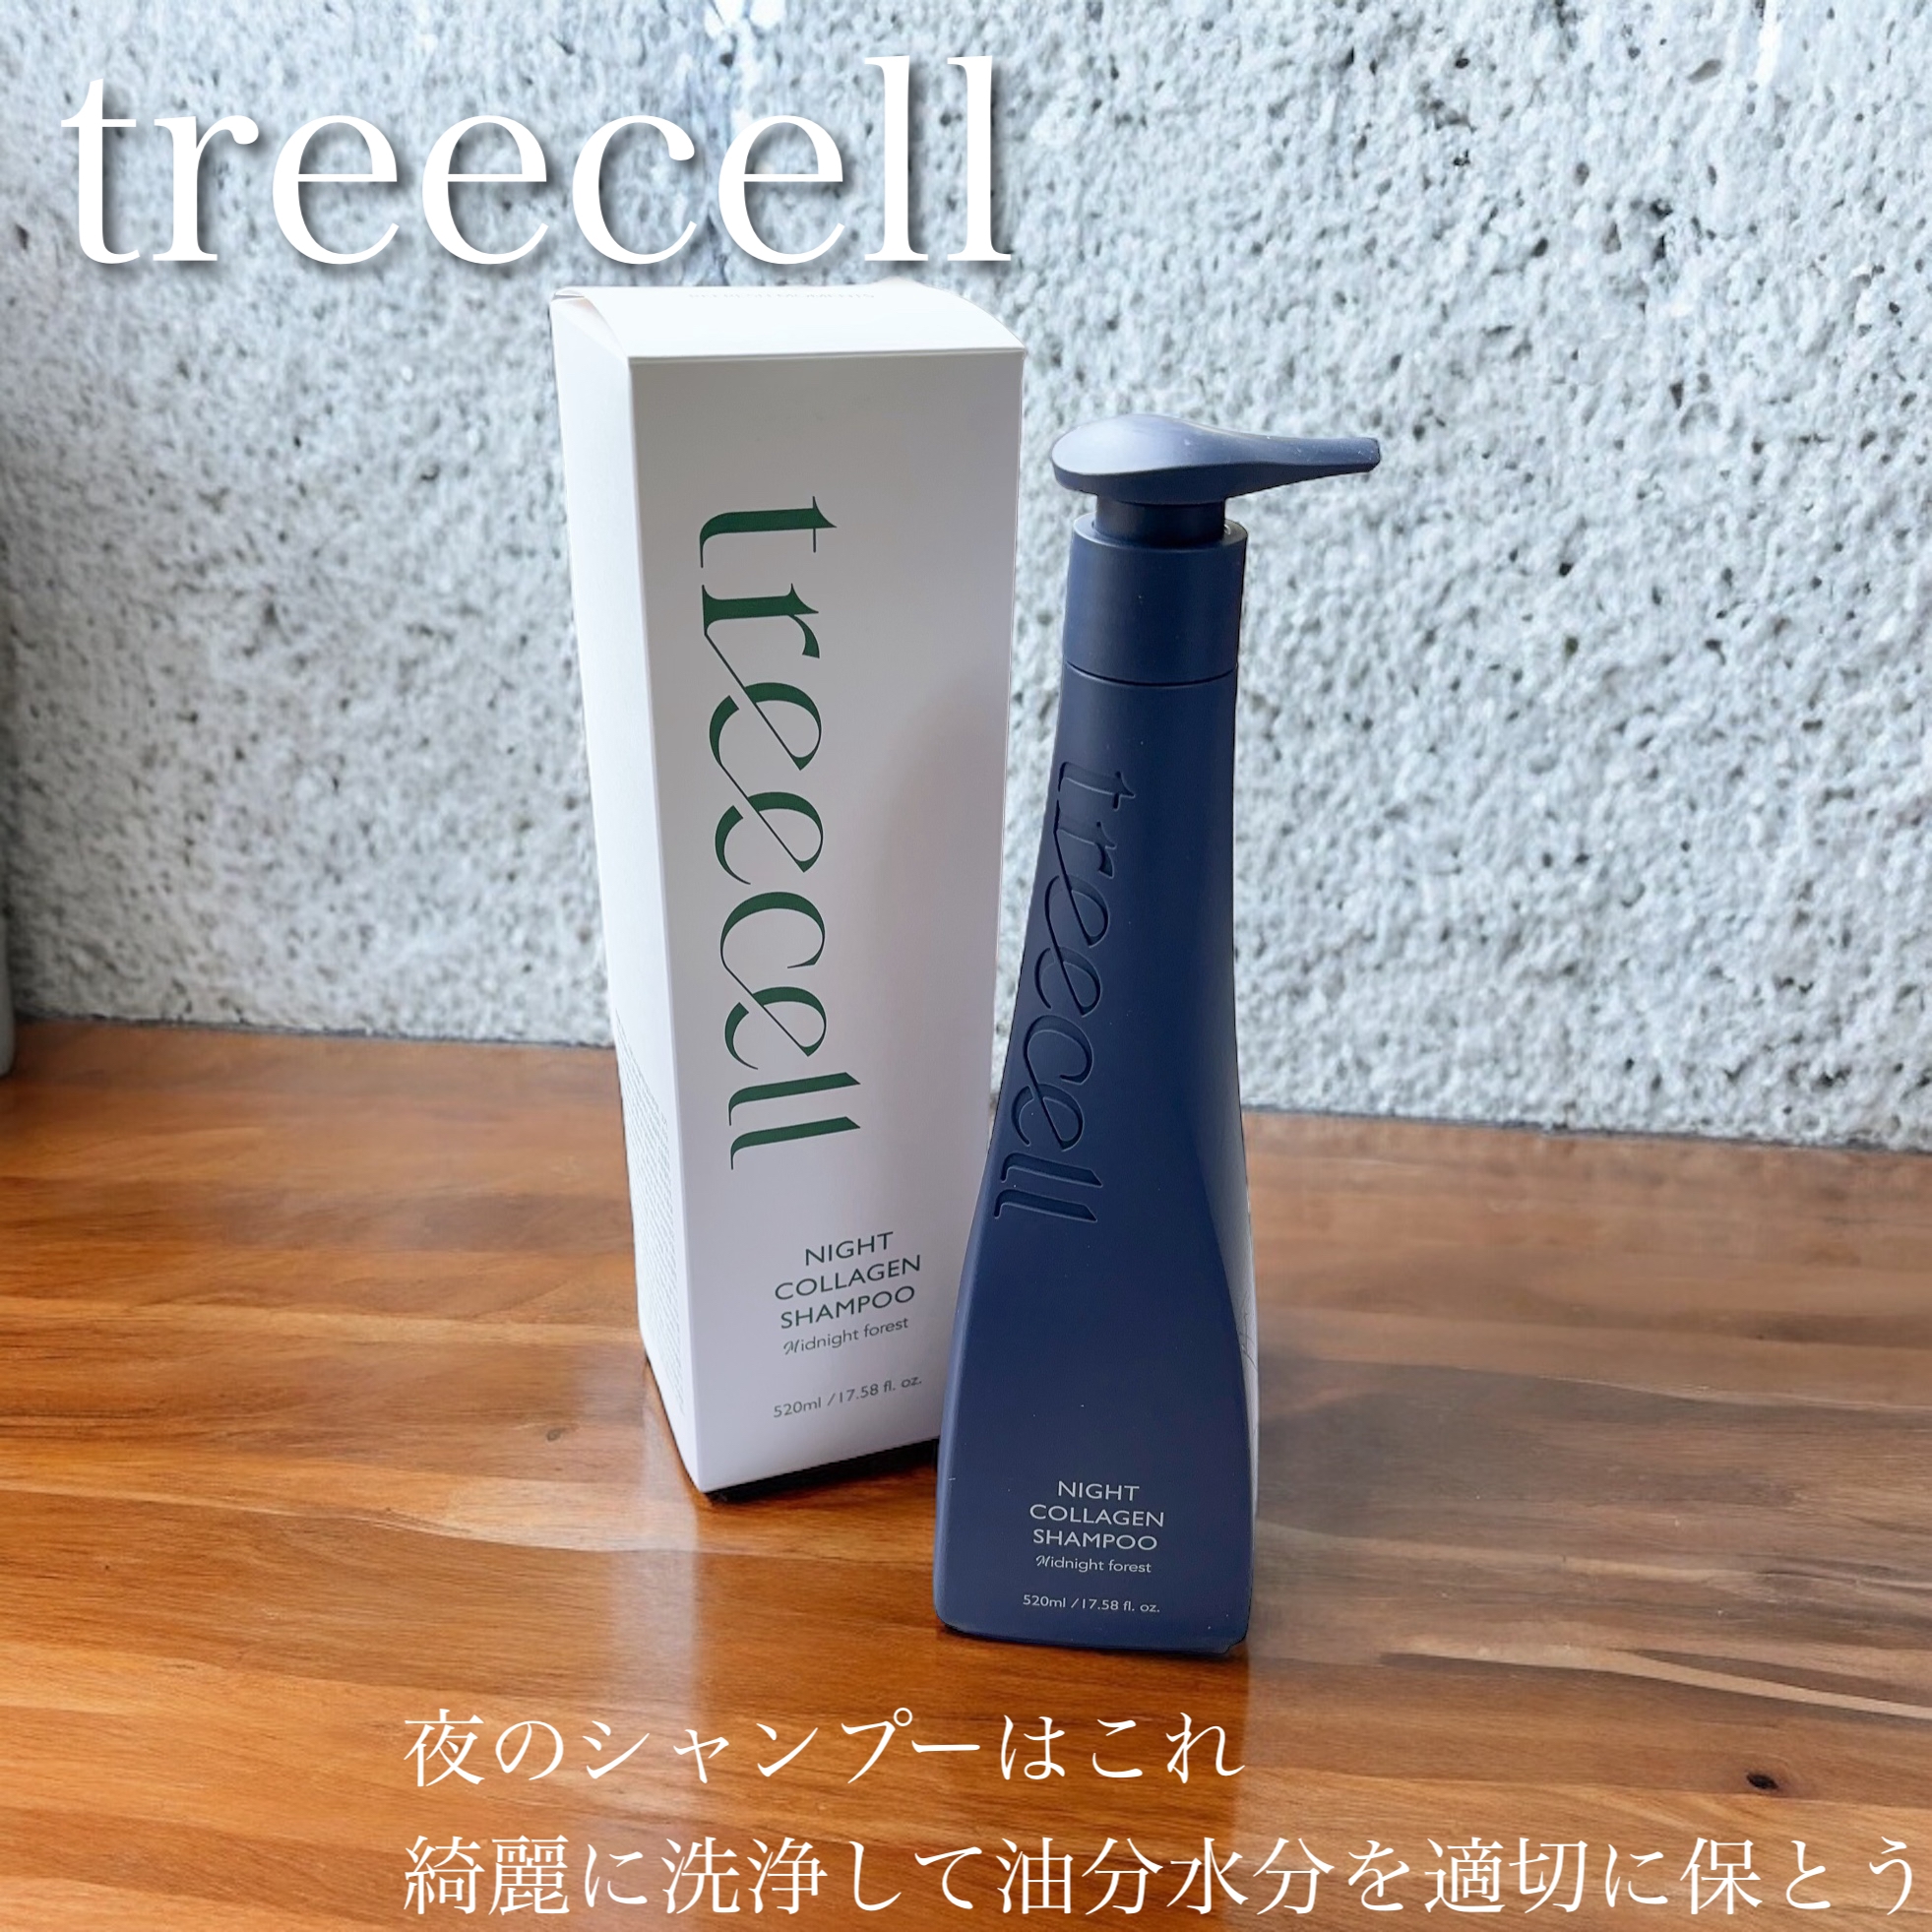 treecell(トリセル) ナイトコラーゲンシャンプー ミッドナイトフォレストの良い点・メリットに関するふっきーさんの口コミ画像1